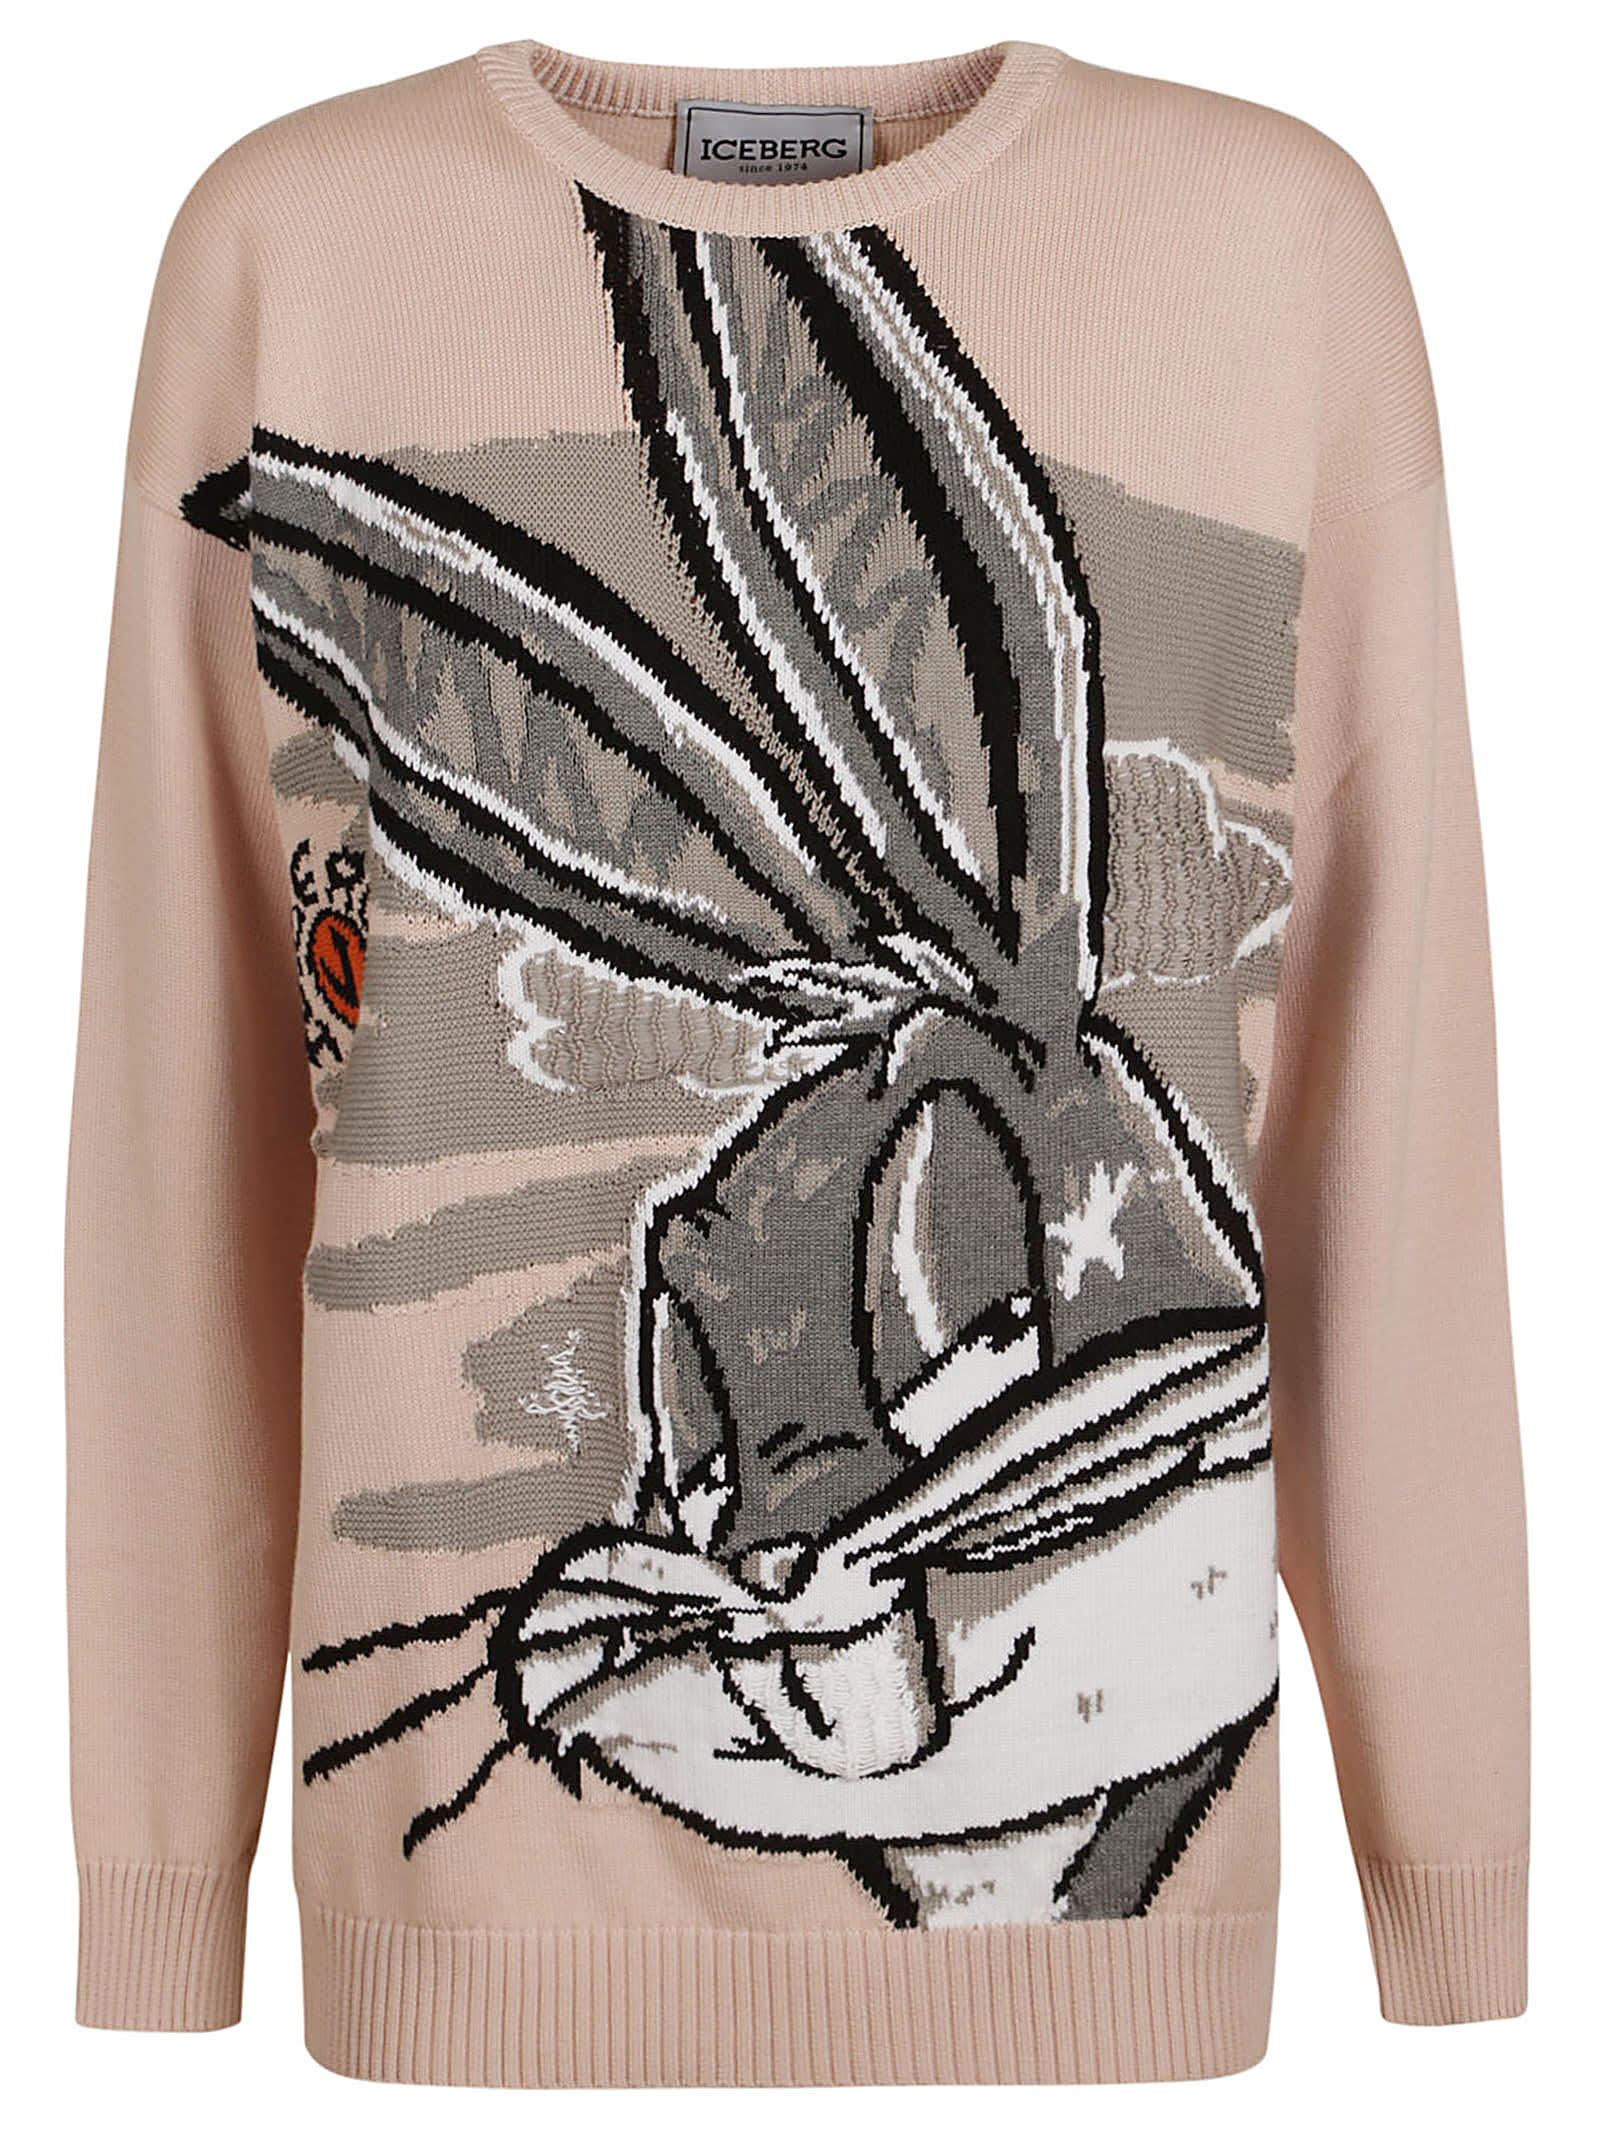 Iceberg Bugs Bunny Sweater In Ecru